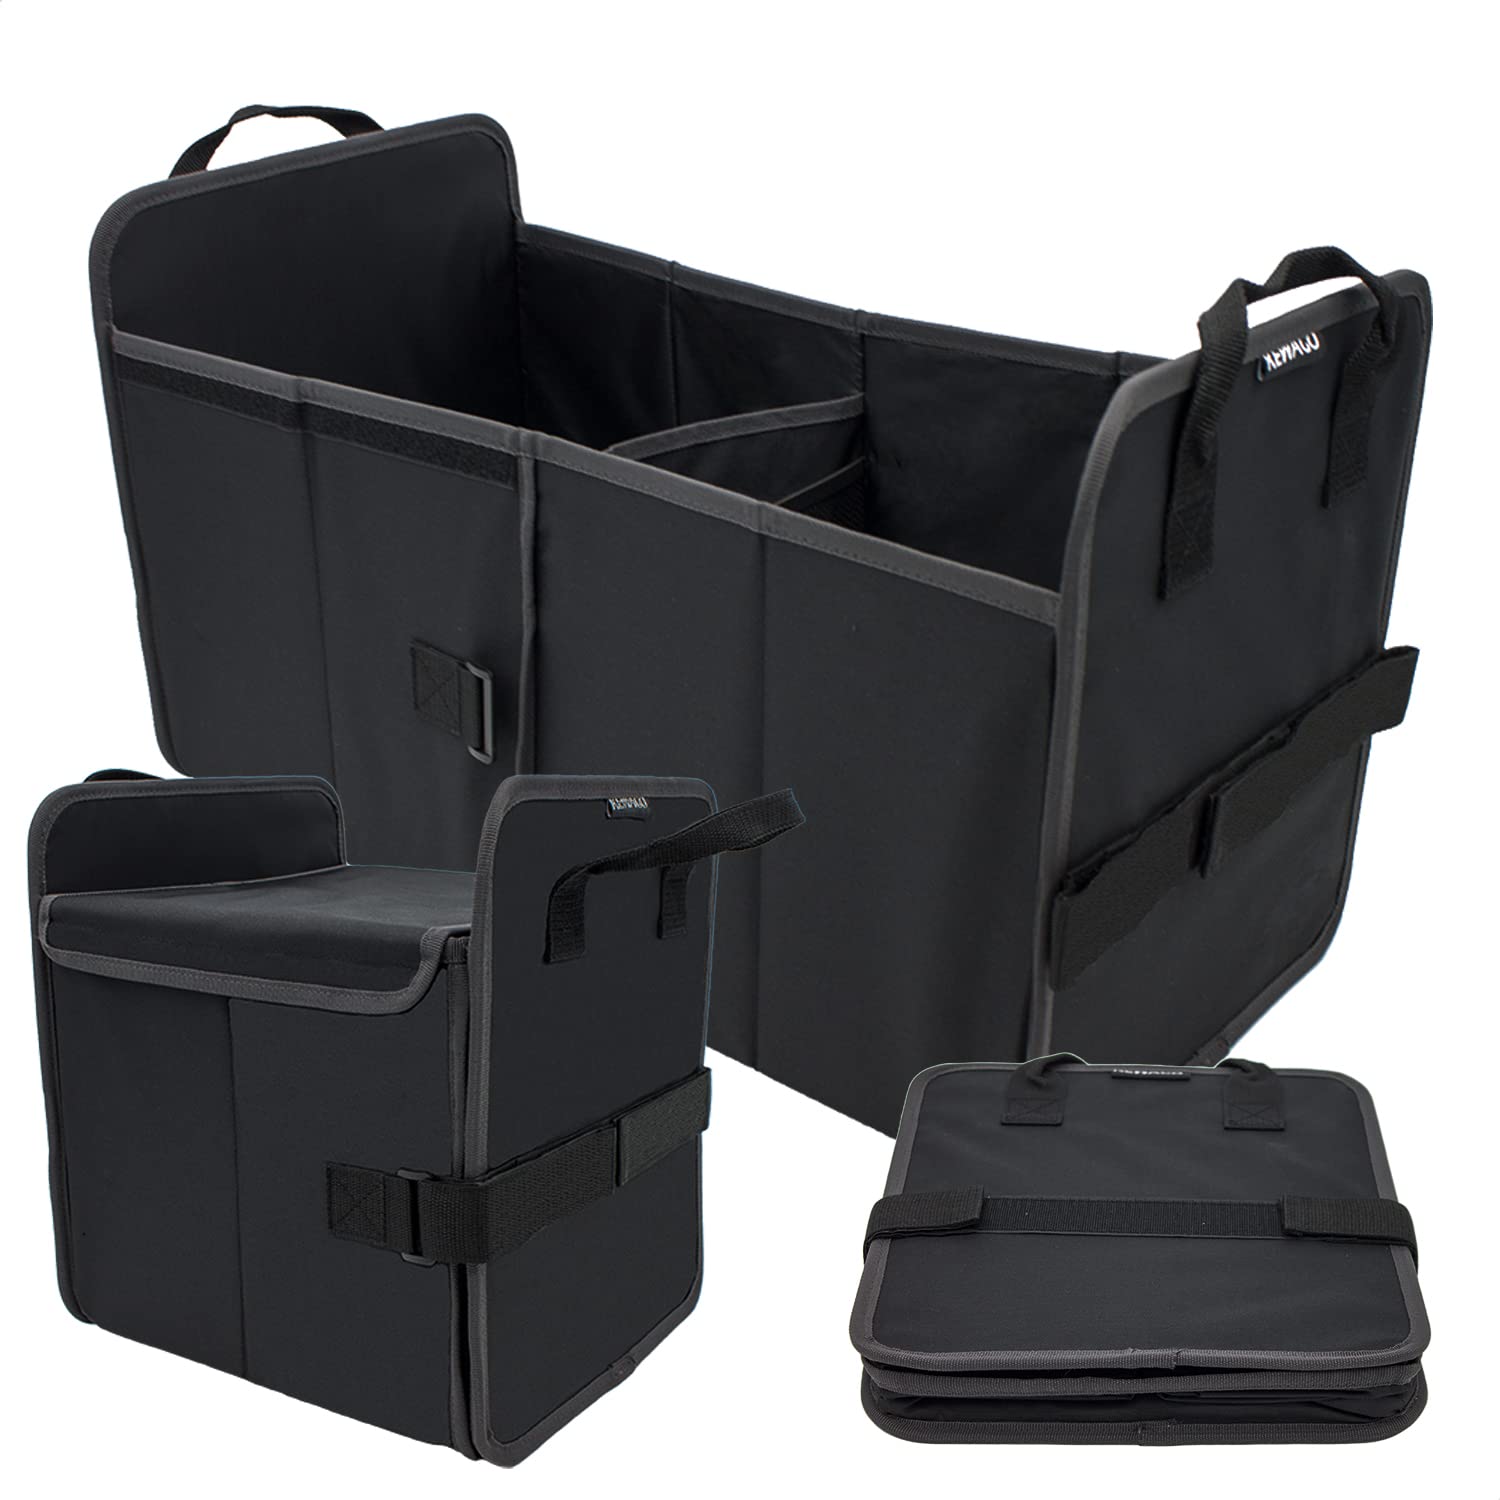 KEWAGO Kofferraumtasche, Kofferraum Organizer mit Deckel. Auto Box mit 2 in 1 Funktion. 20 oder 40 Liter Volumen. Auto Zubehör, Camping Box, Einkaufskorb Auto und Organisator in einem von Kewago